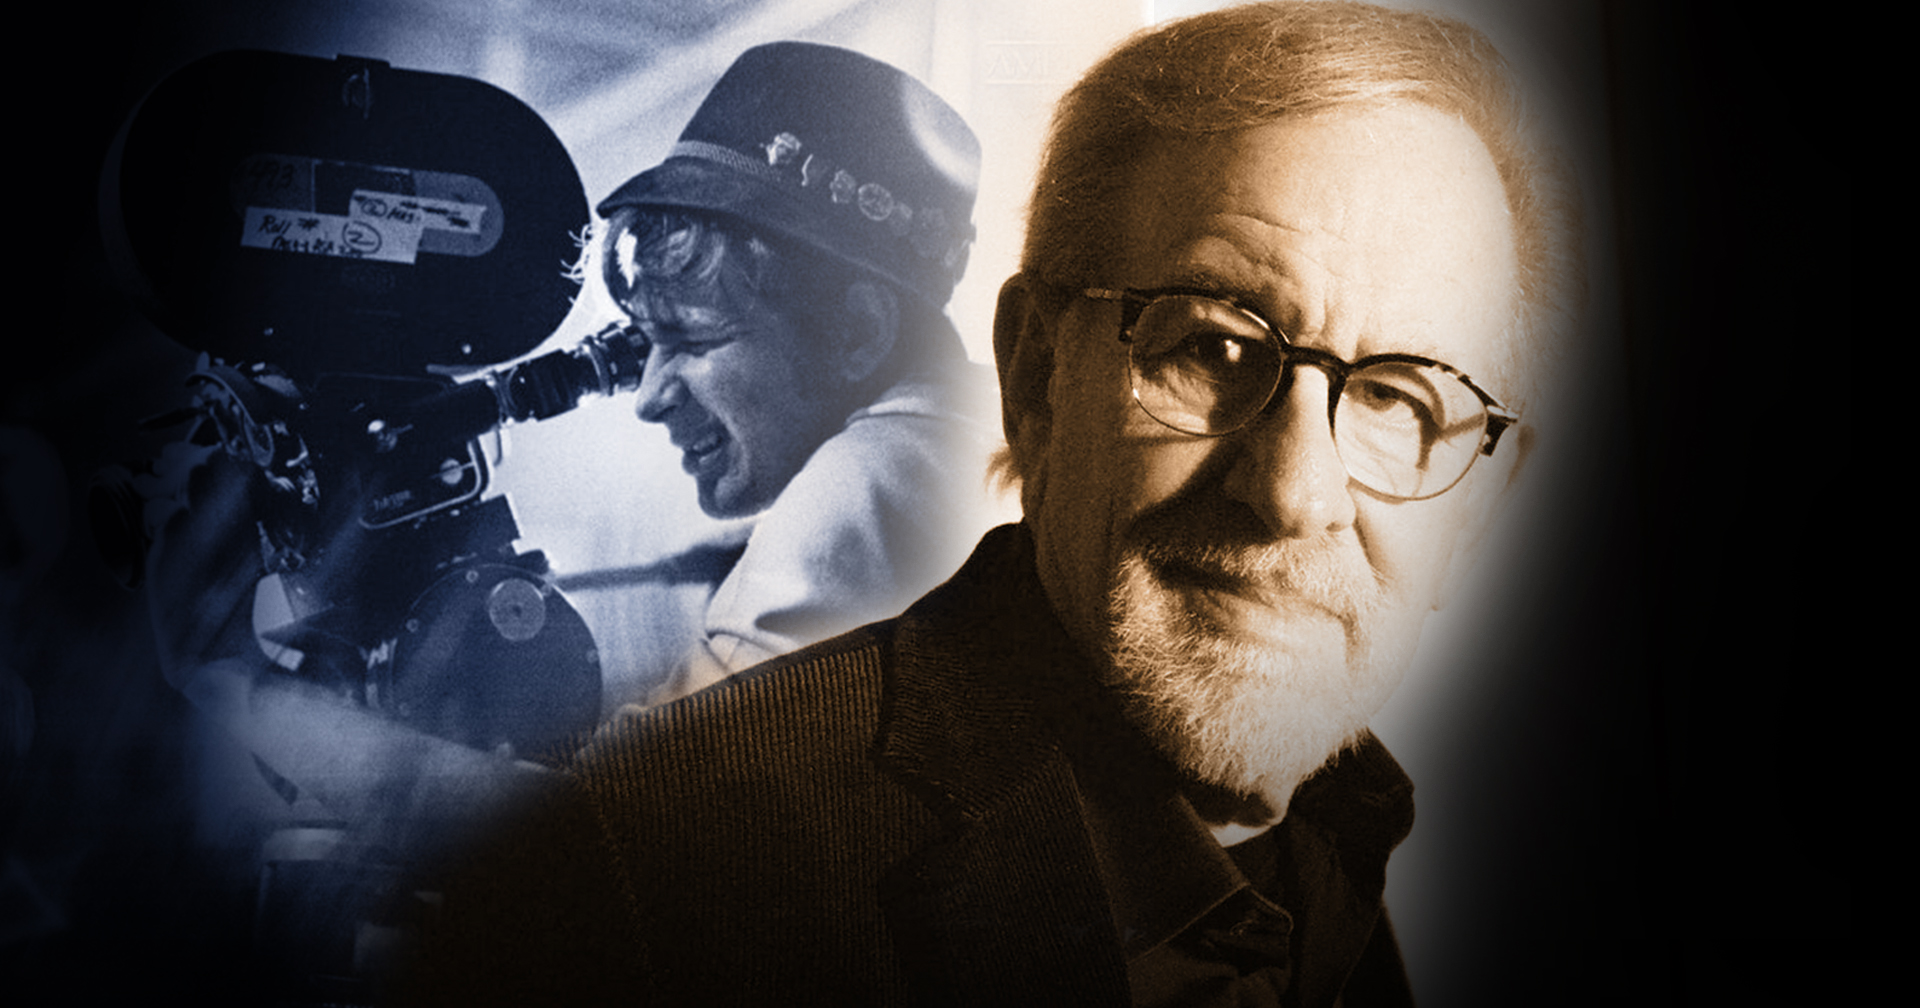 มารู้จัก 6 อันดับหนังในดวงใจตลอดกาลของพ่อมด ‘Steven Spielberg’ กัน